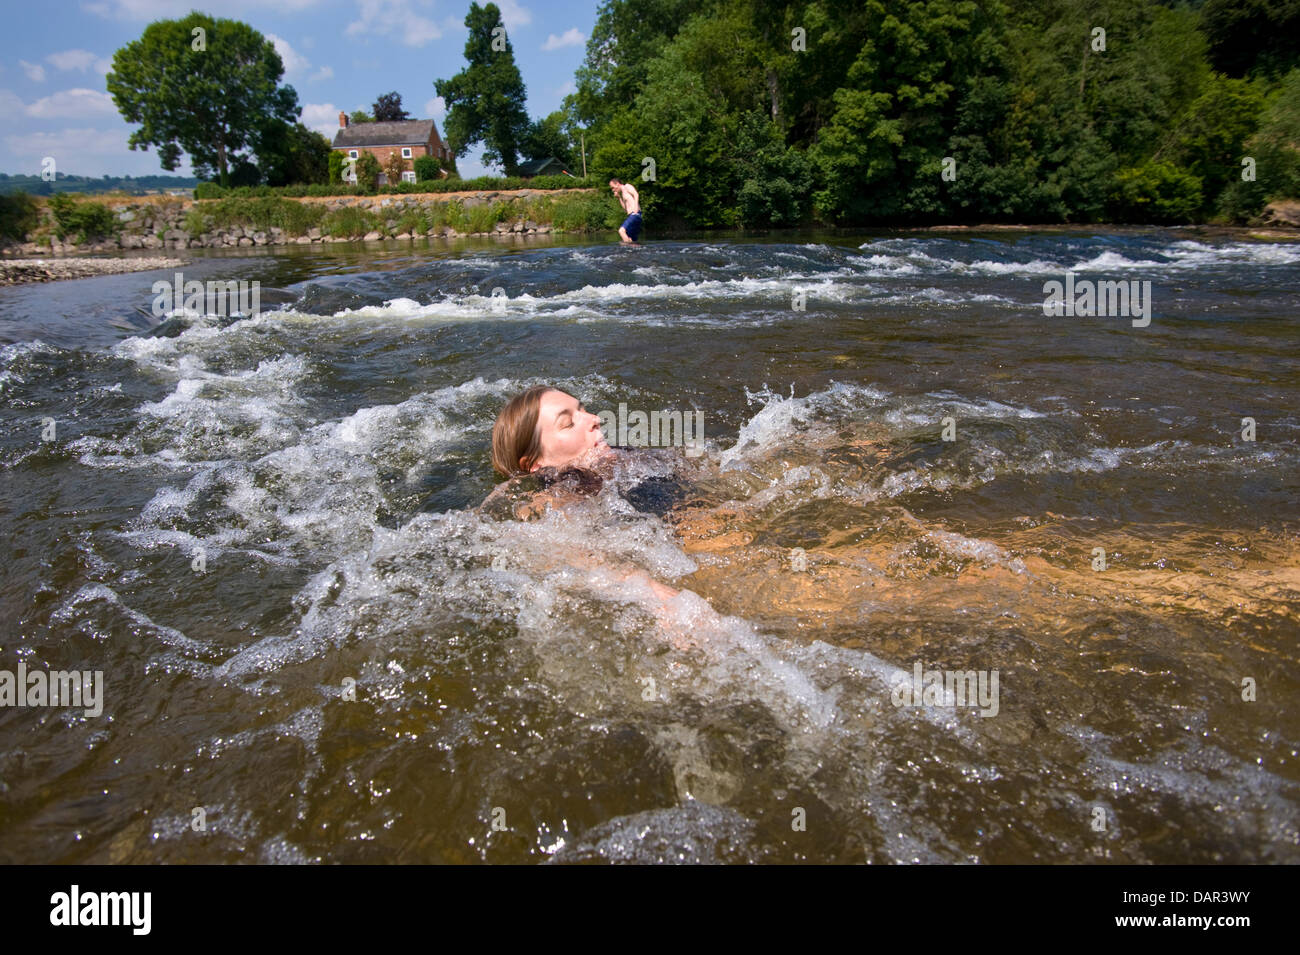 Come le temperature raggiungono 30ºC vacanziere Julie Burrows da Norfolk raffredda nel fiume Wye a Hay on Wye, Powys, Wales, Regno Unito Foto Stock